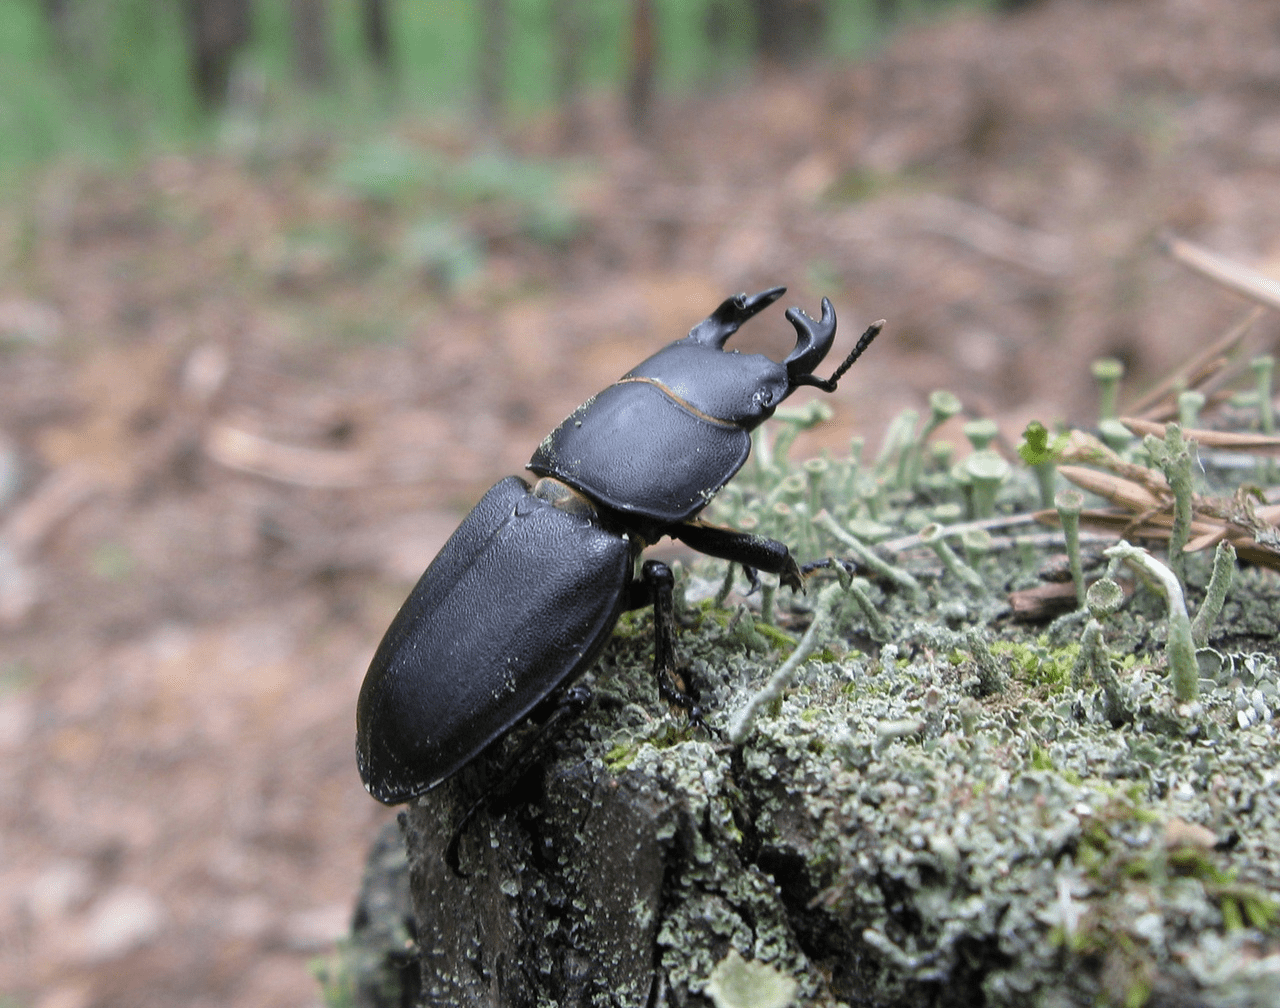 Оленёк обыкновенный (лат. Dorcus parallelipipedus) — жук семейства рогачей.